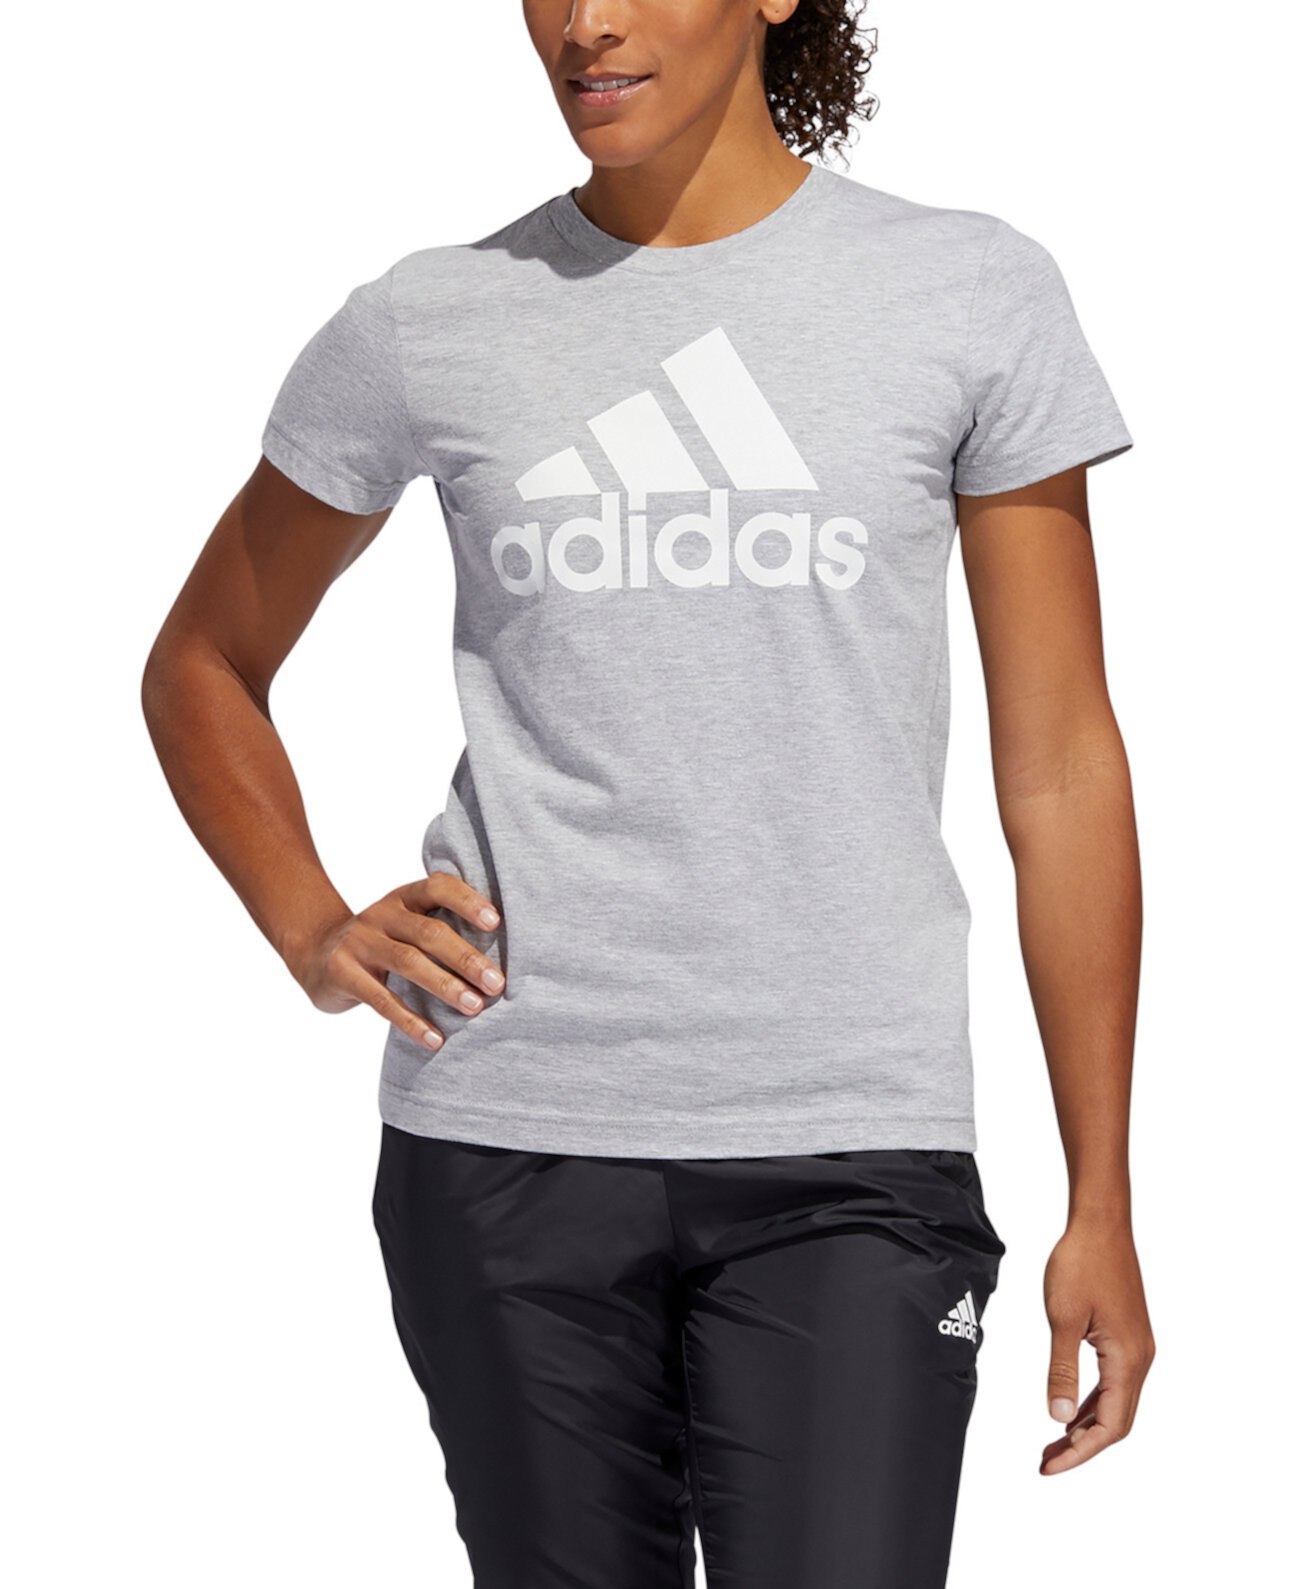 Женская хлопковая футболка со спортивным значком Adidas